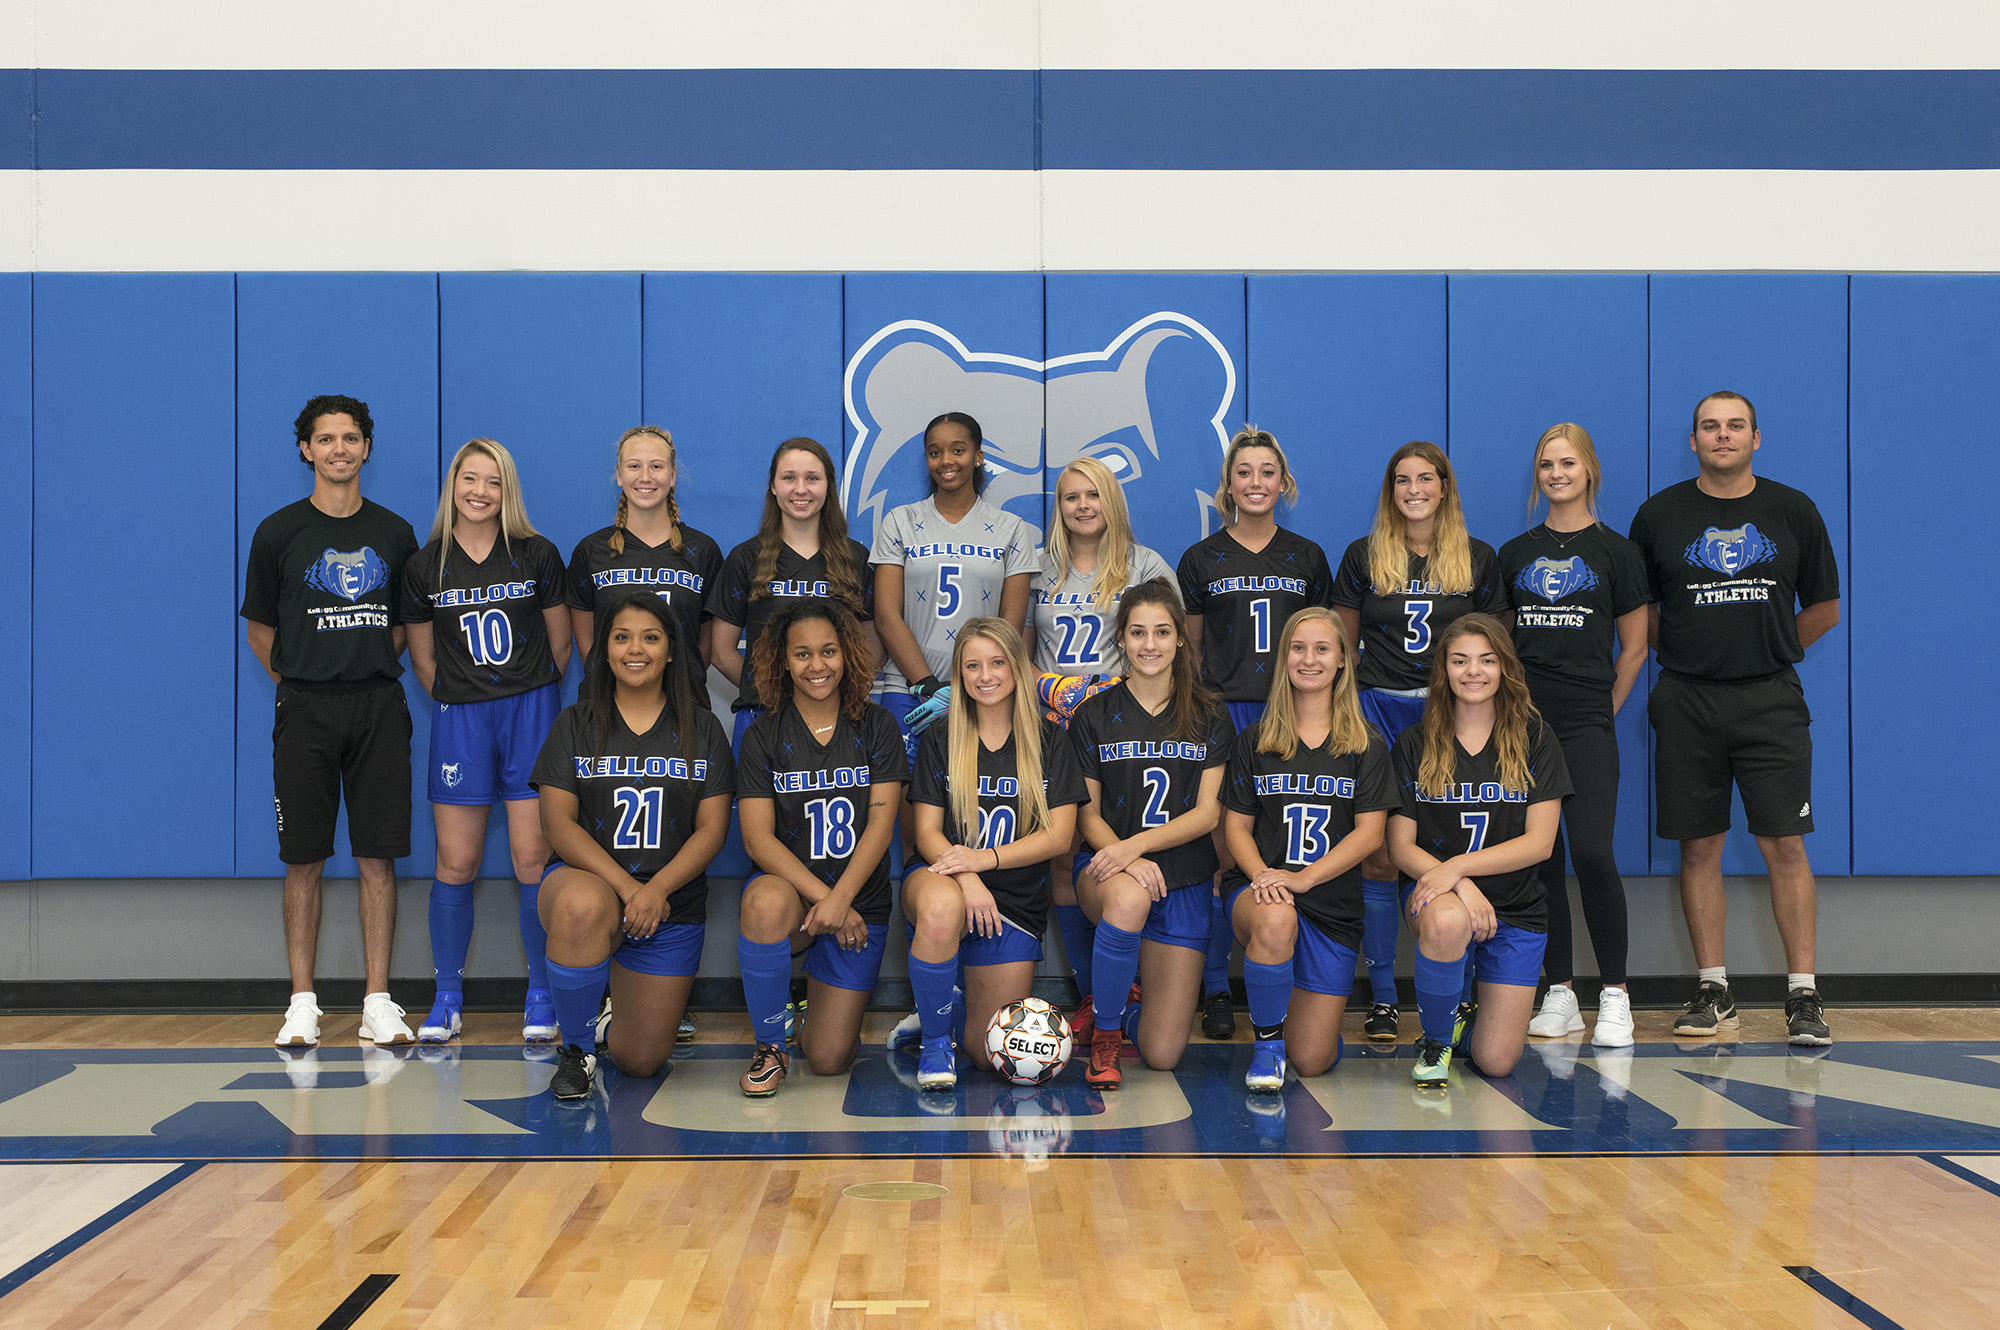 KCC's 2019 women's soccer team.